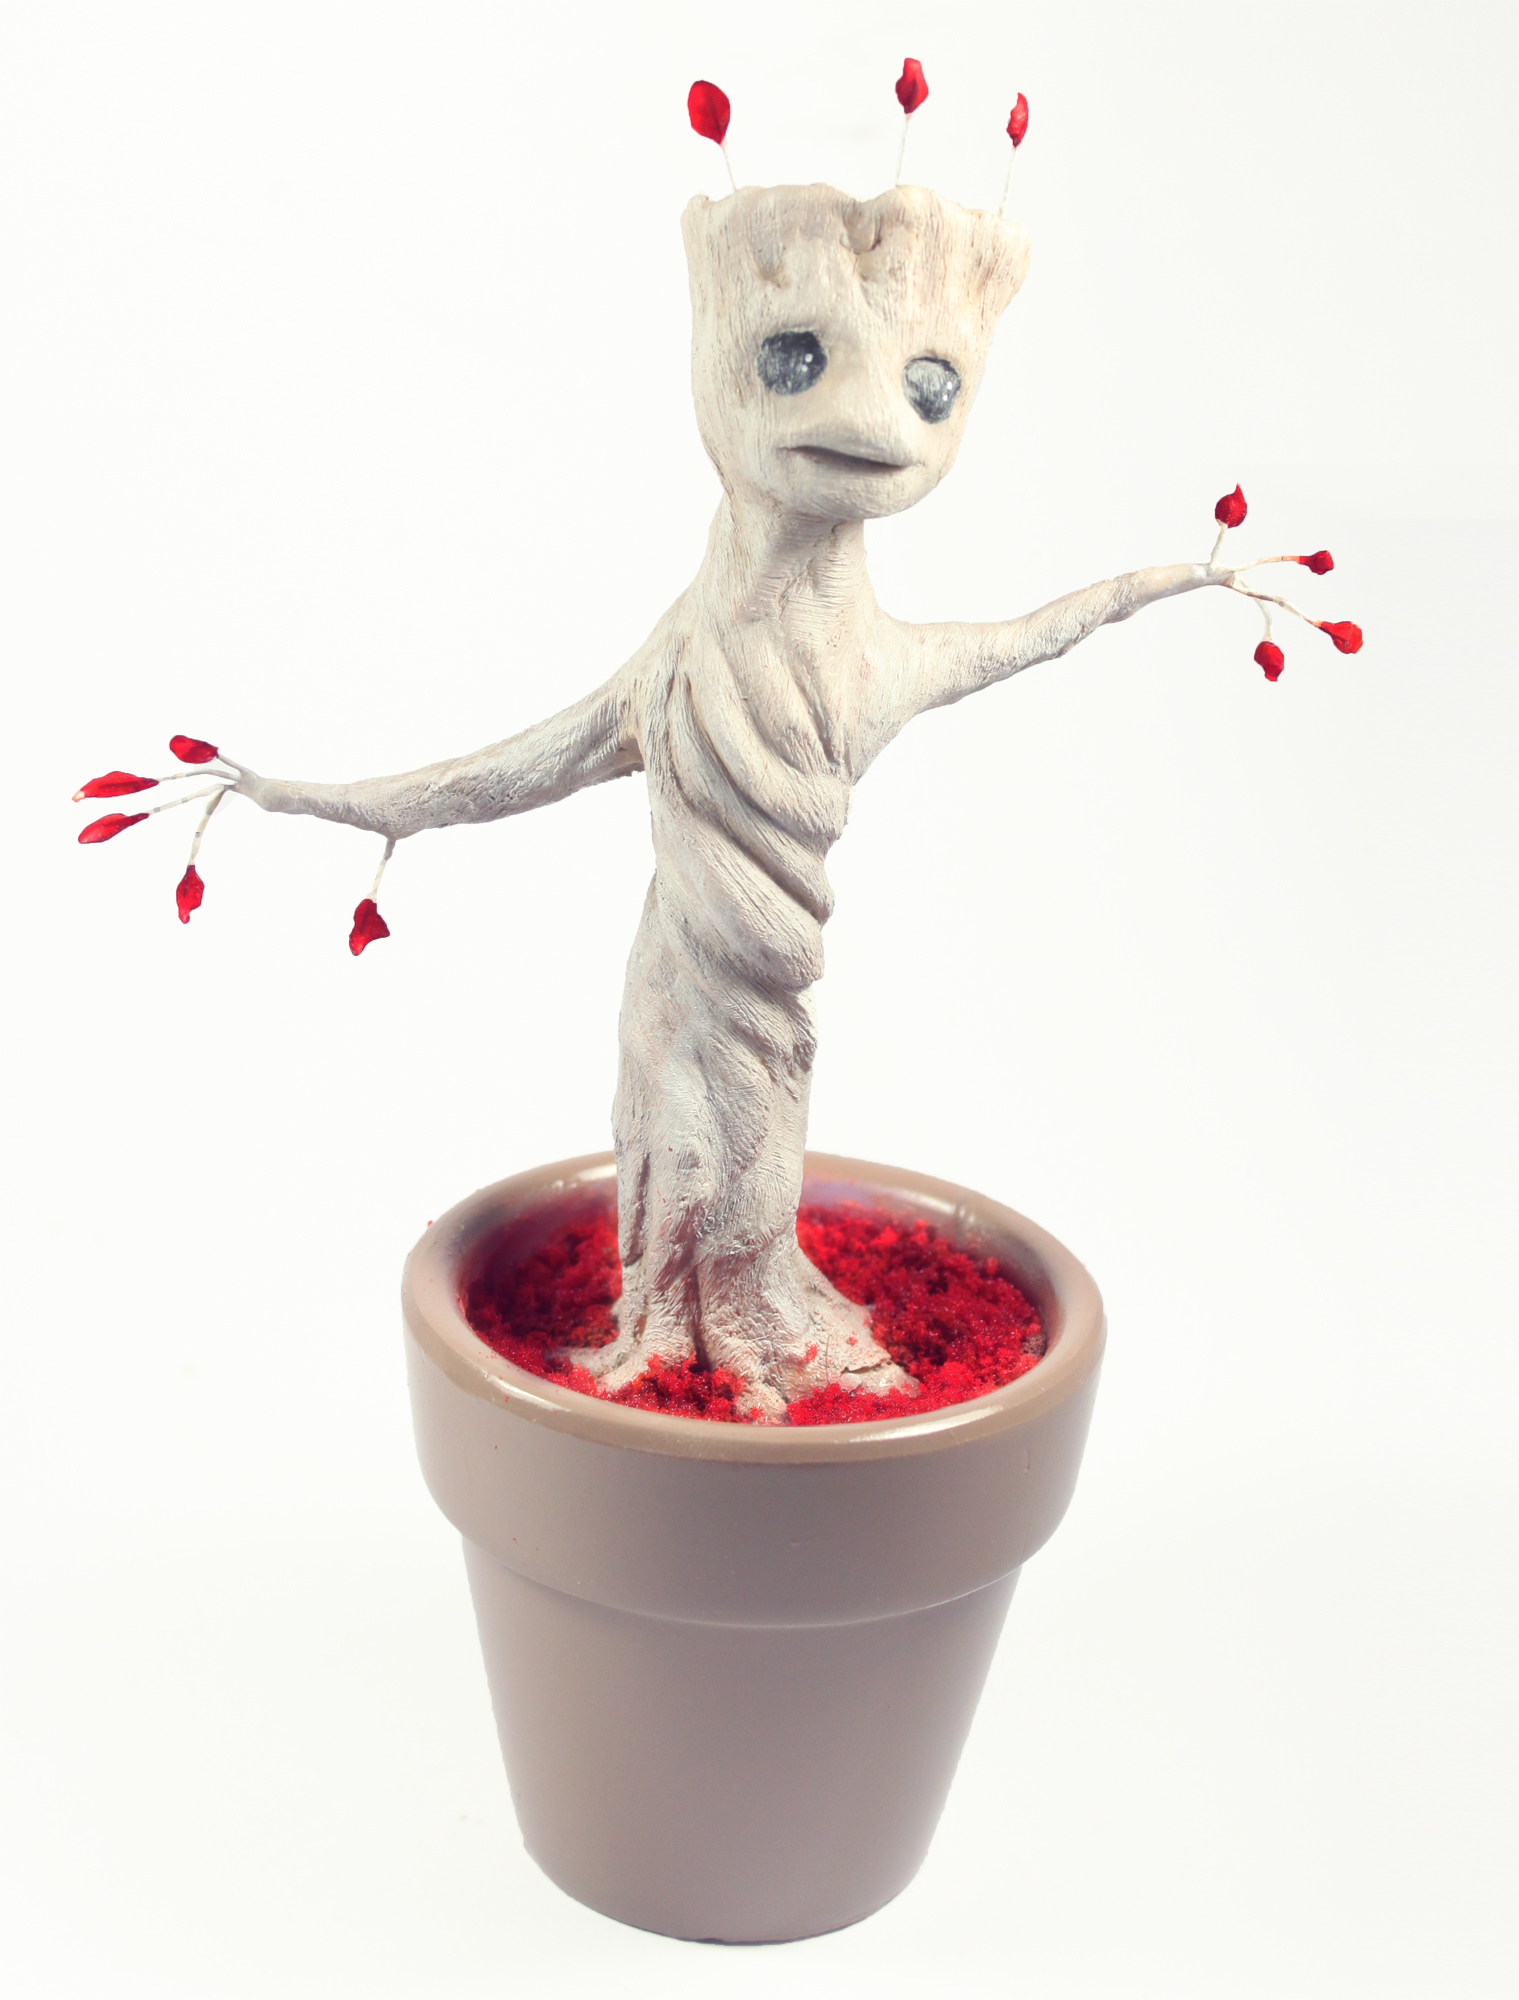 OOAK Polymer Baby Groot by Julie Sharpe